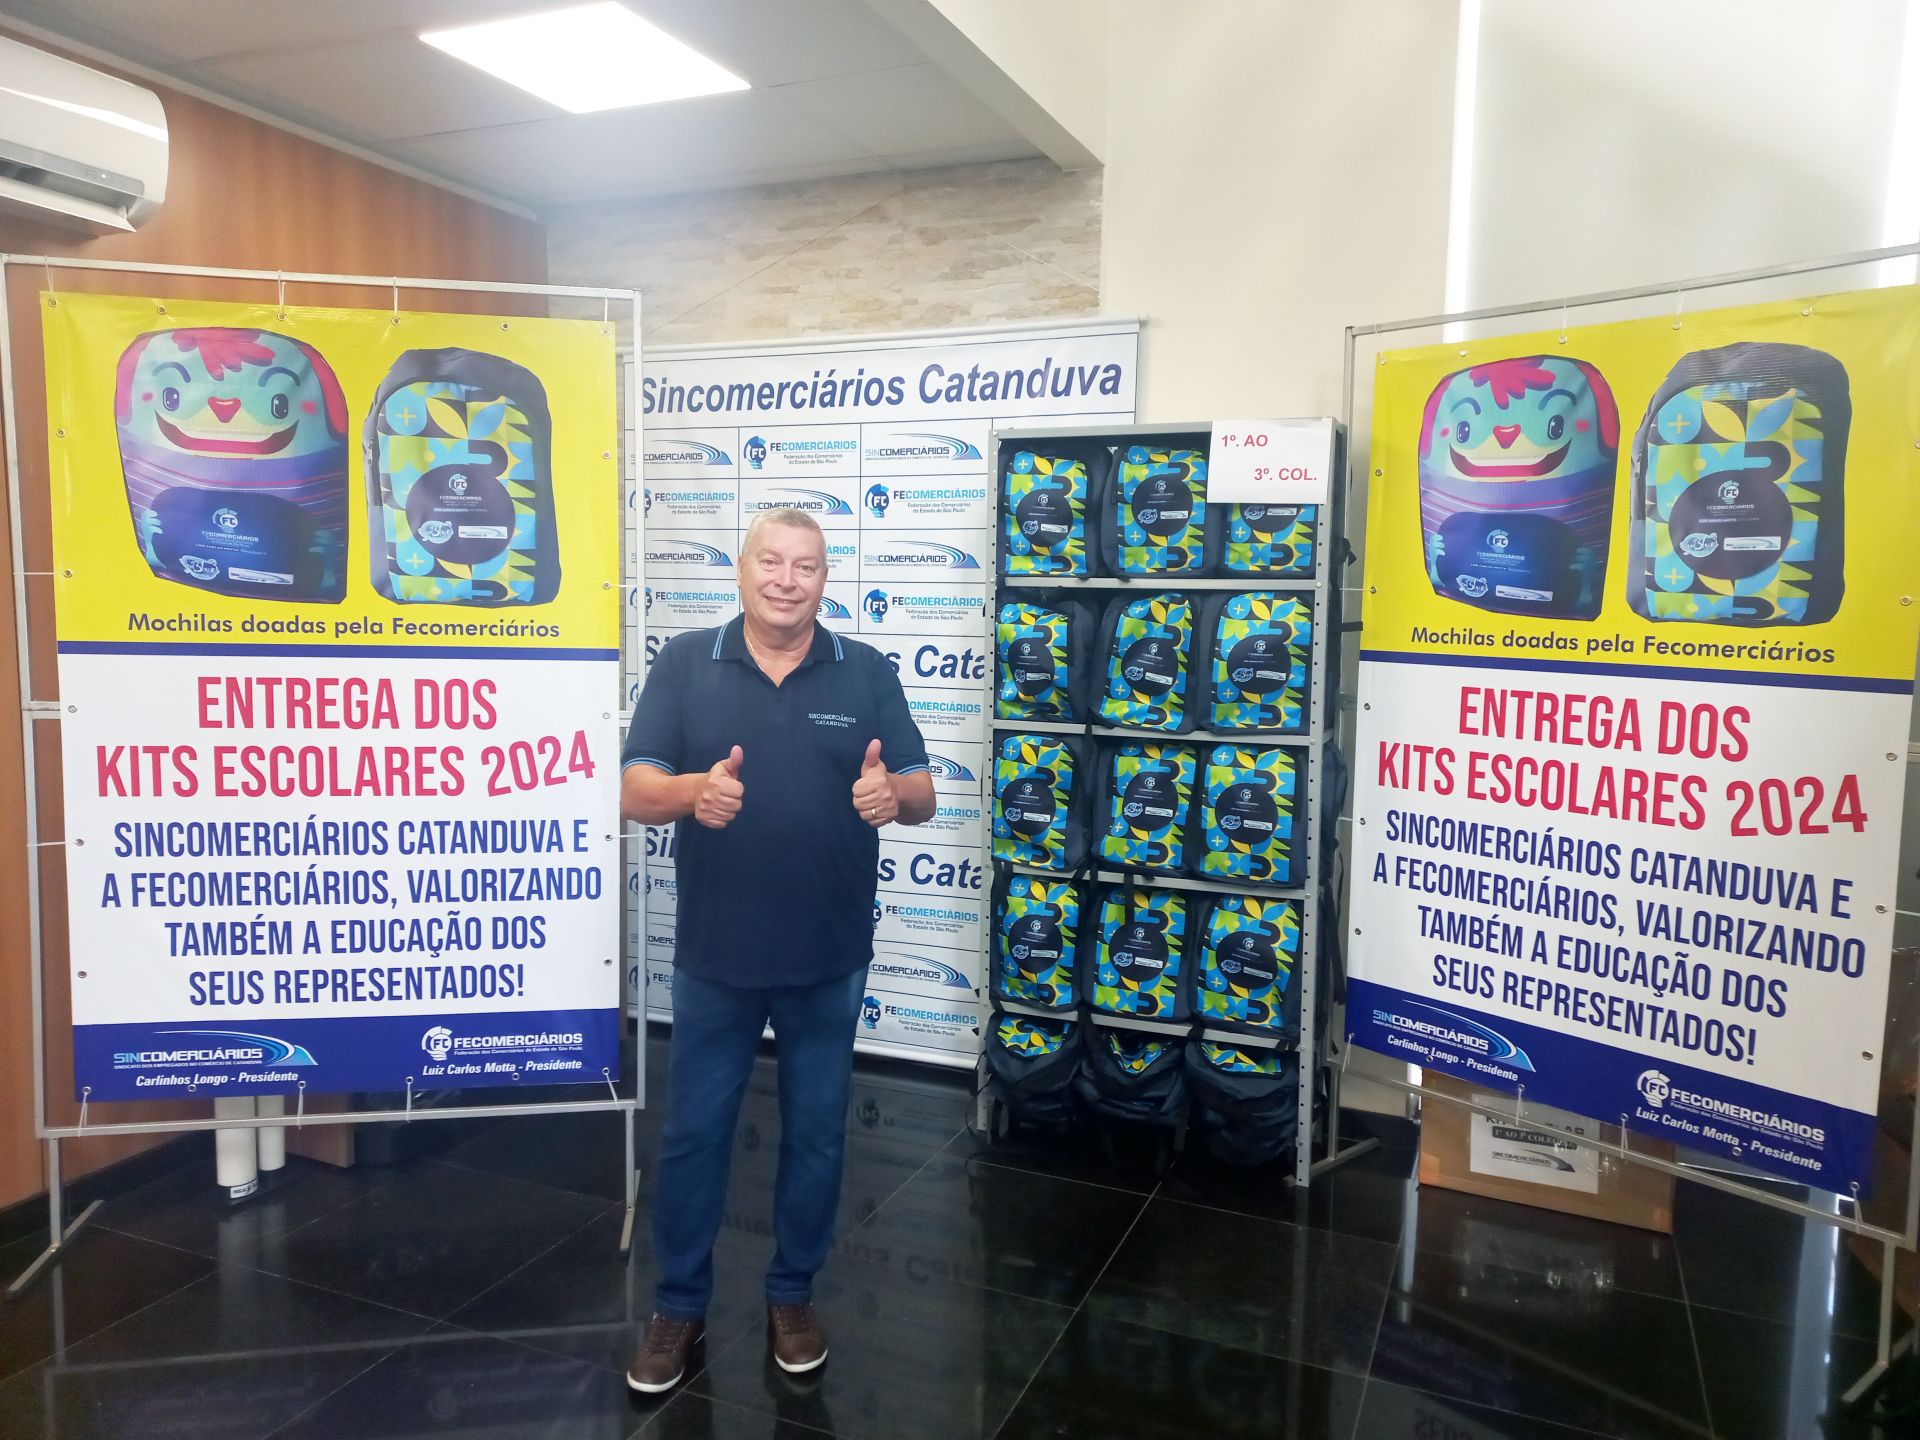 Sincomerciários de Catanduva entregou 1.335 kits escolares